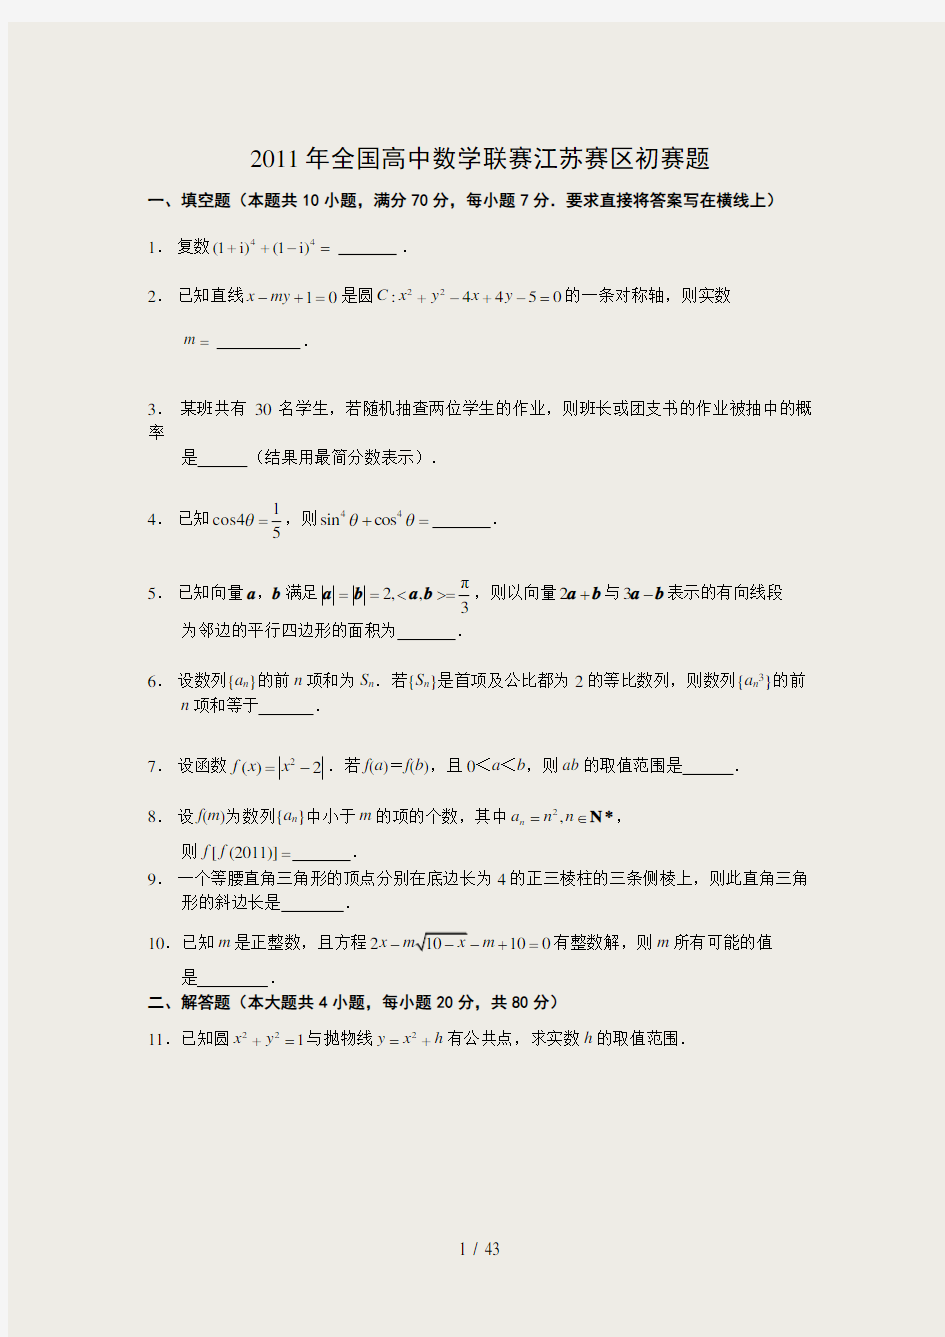 2006全国高中数学联赛江苏赛区初赛试卷精华版